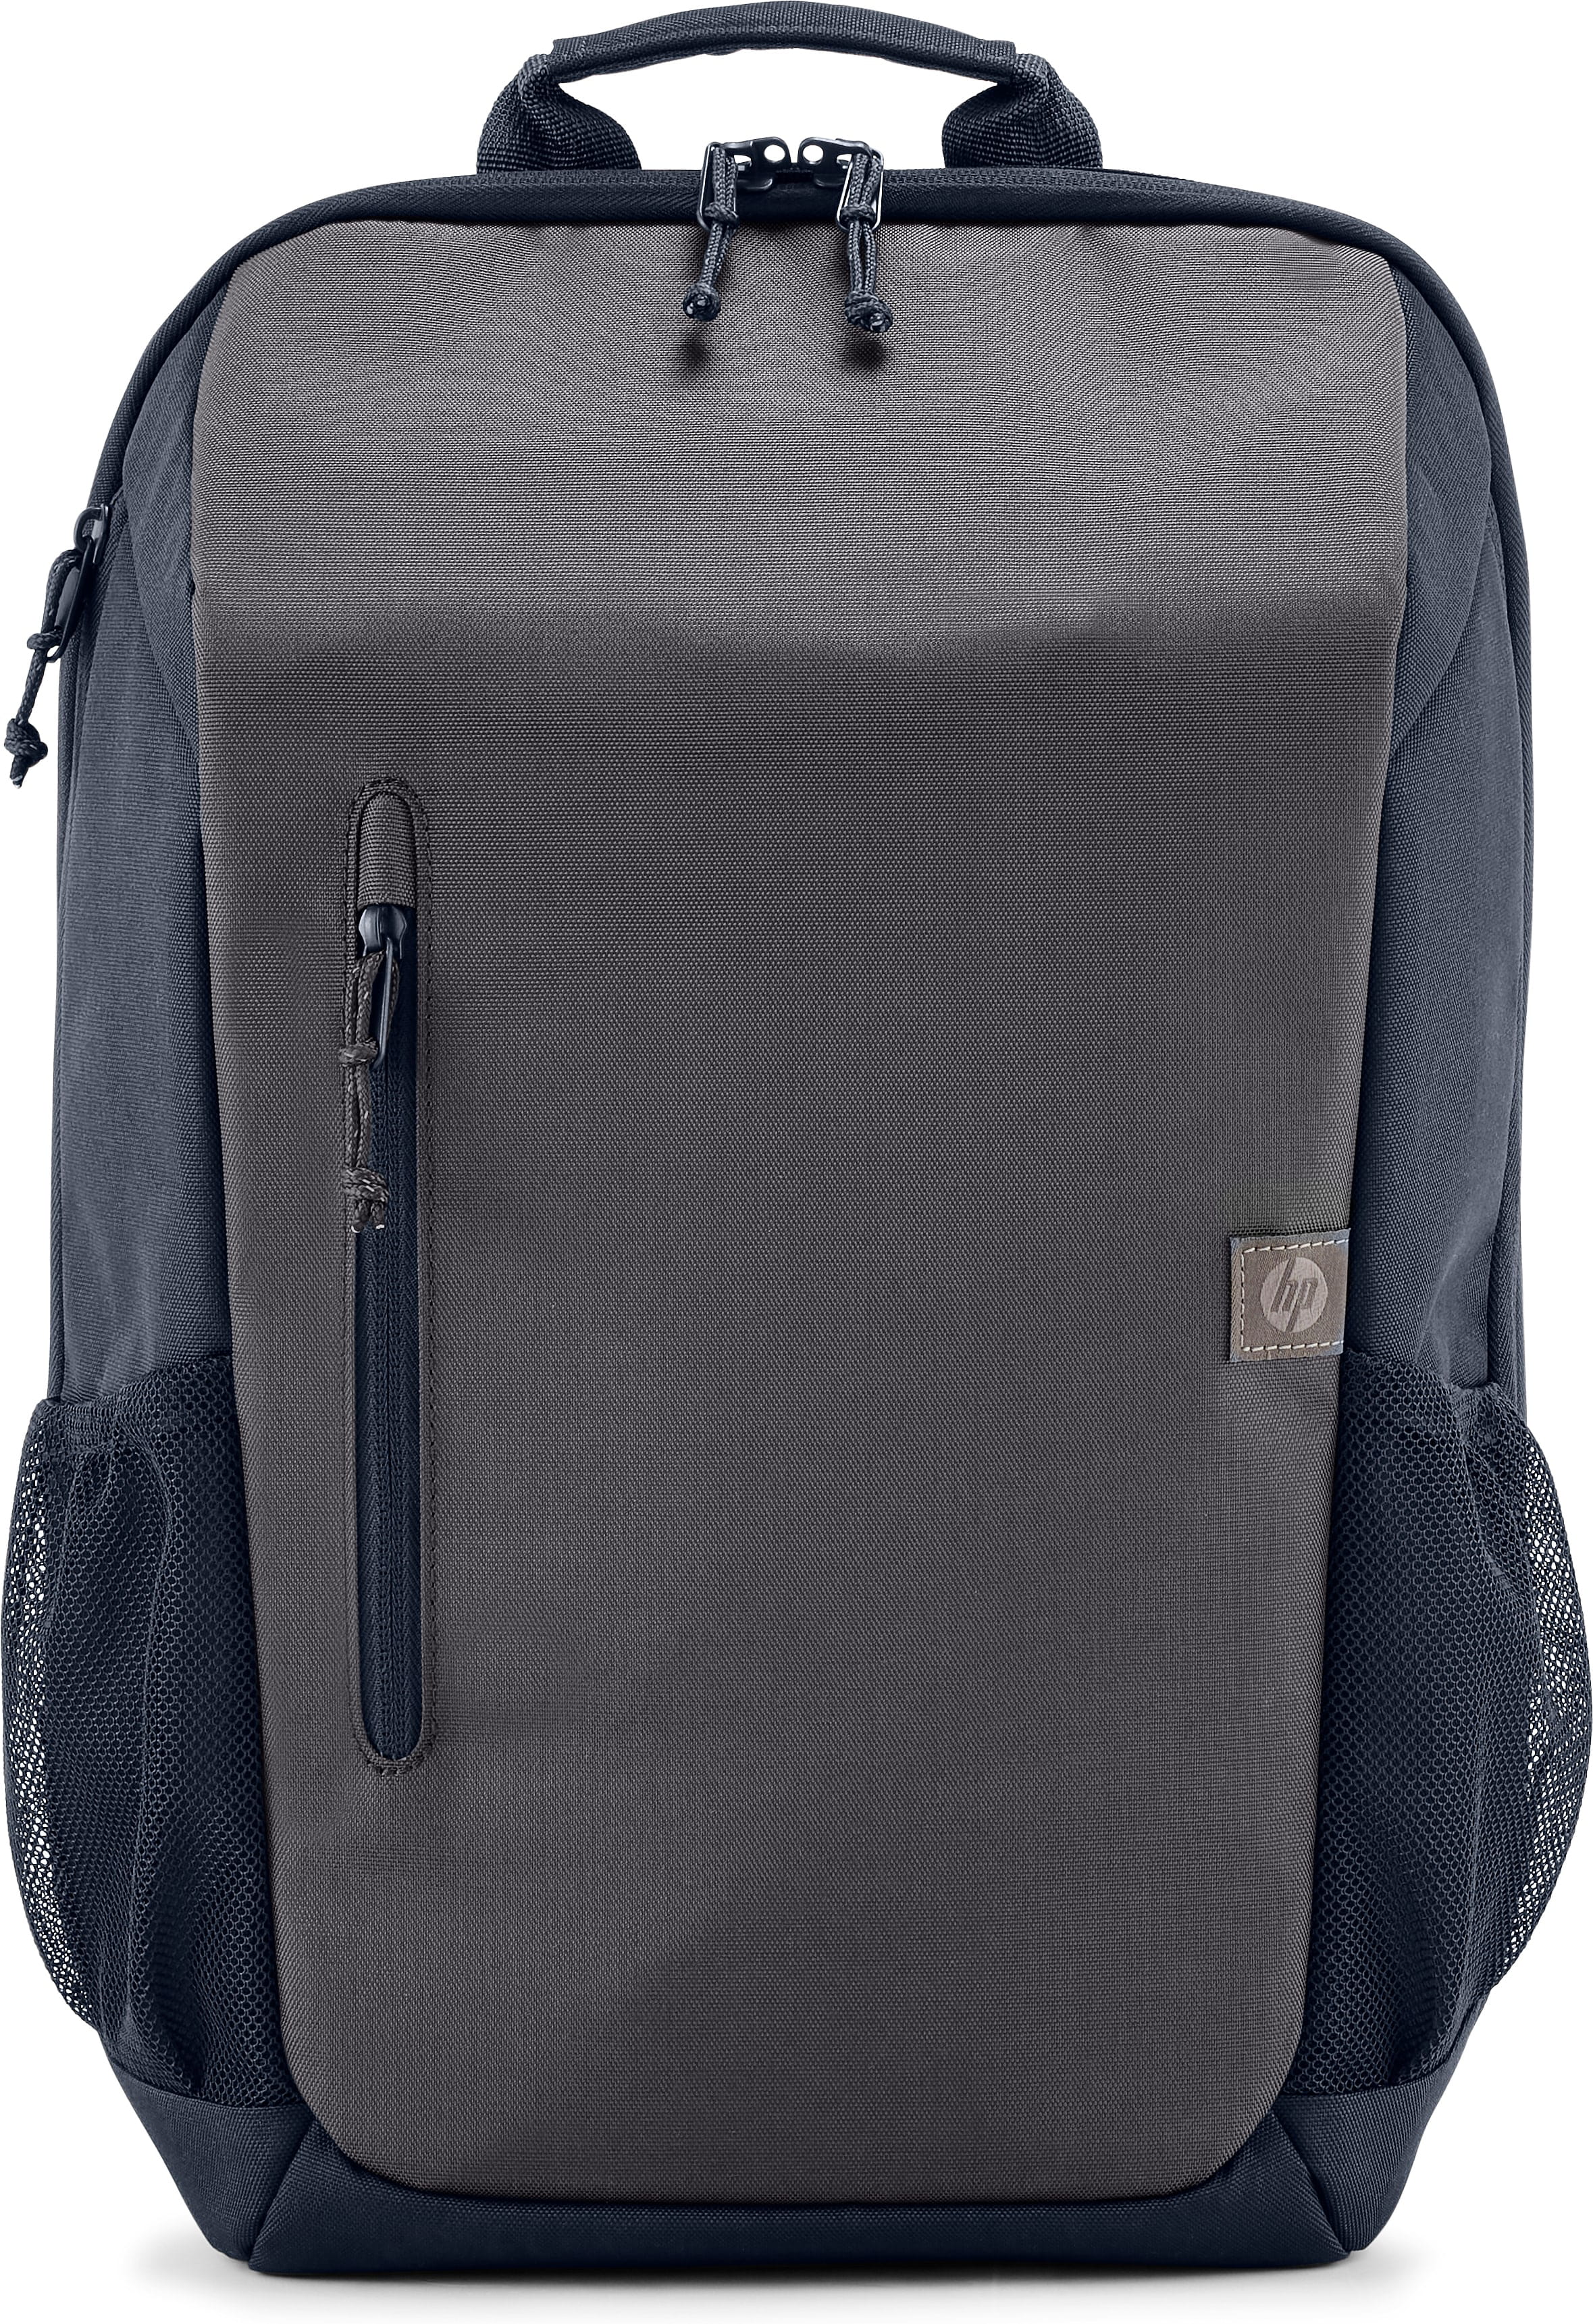 HP Travel - Notebook-Rucksack - 39.6 cm - bis zu 15,6"